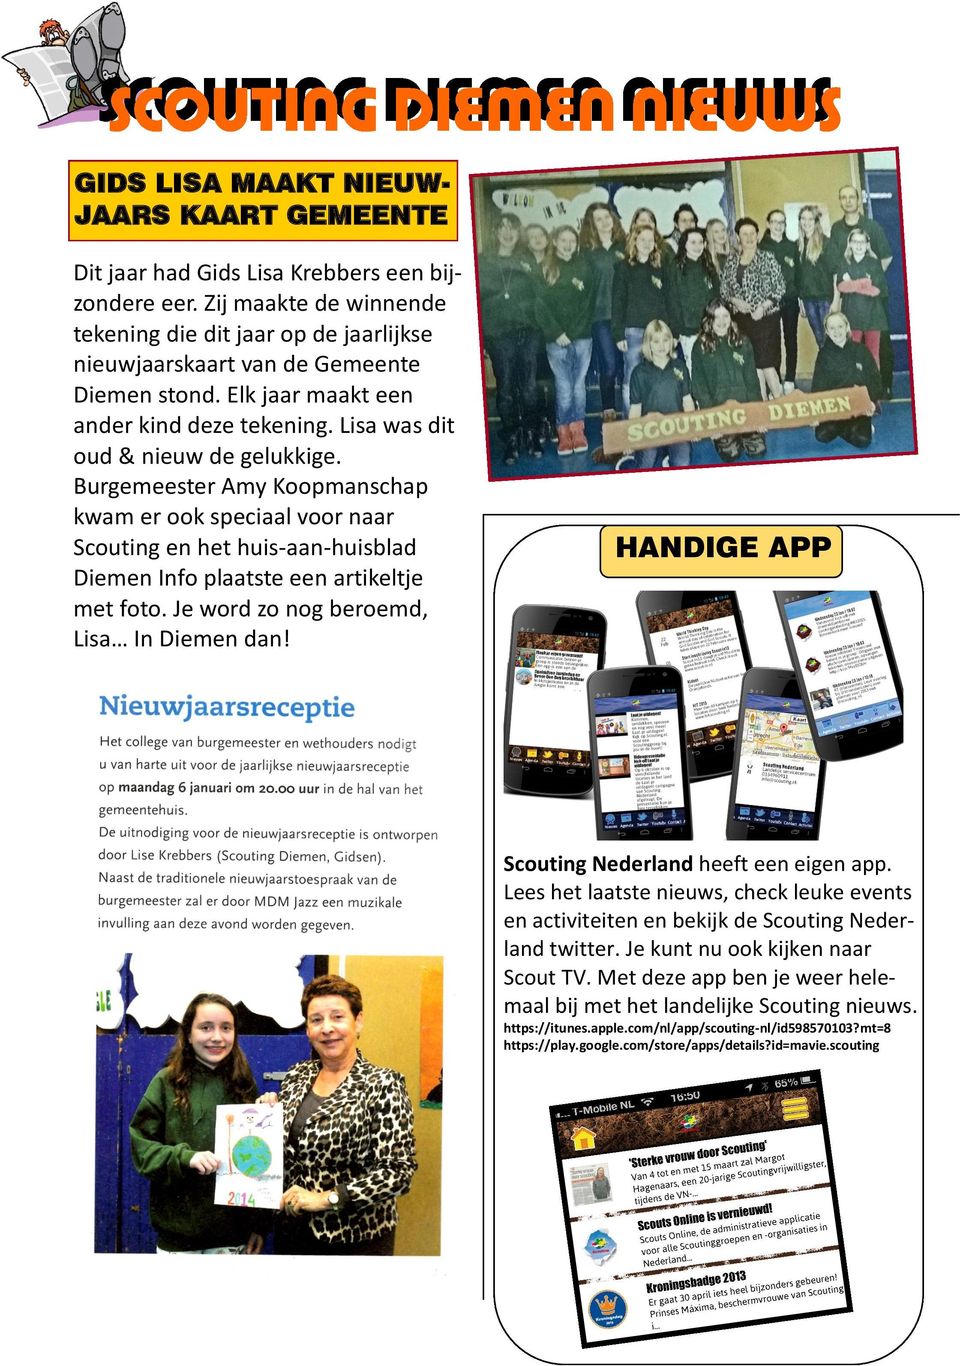 Burgemeester Amy Koopmanschap kwam er ook speciaal voor naar Scouting en het huis-aan-huisblad Diemen Info plaatste een artikeltje met foto. Je word zo nog beroemd, Lisa In Diemen dan!